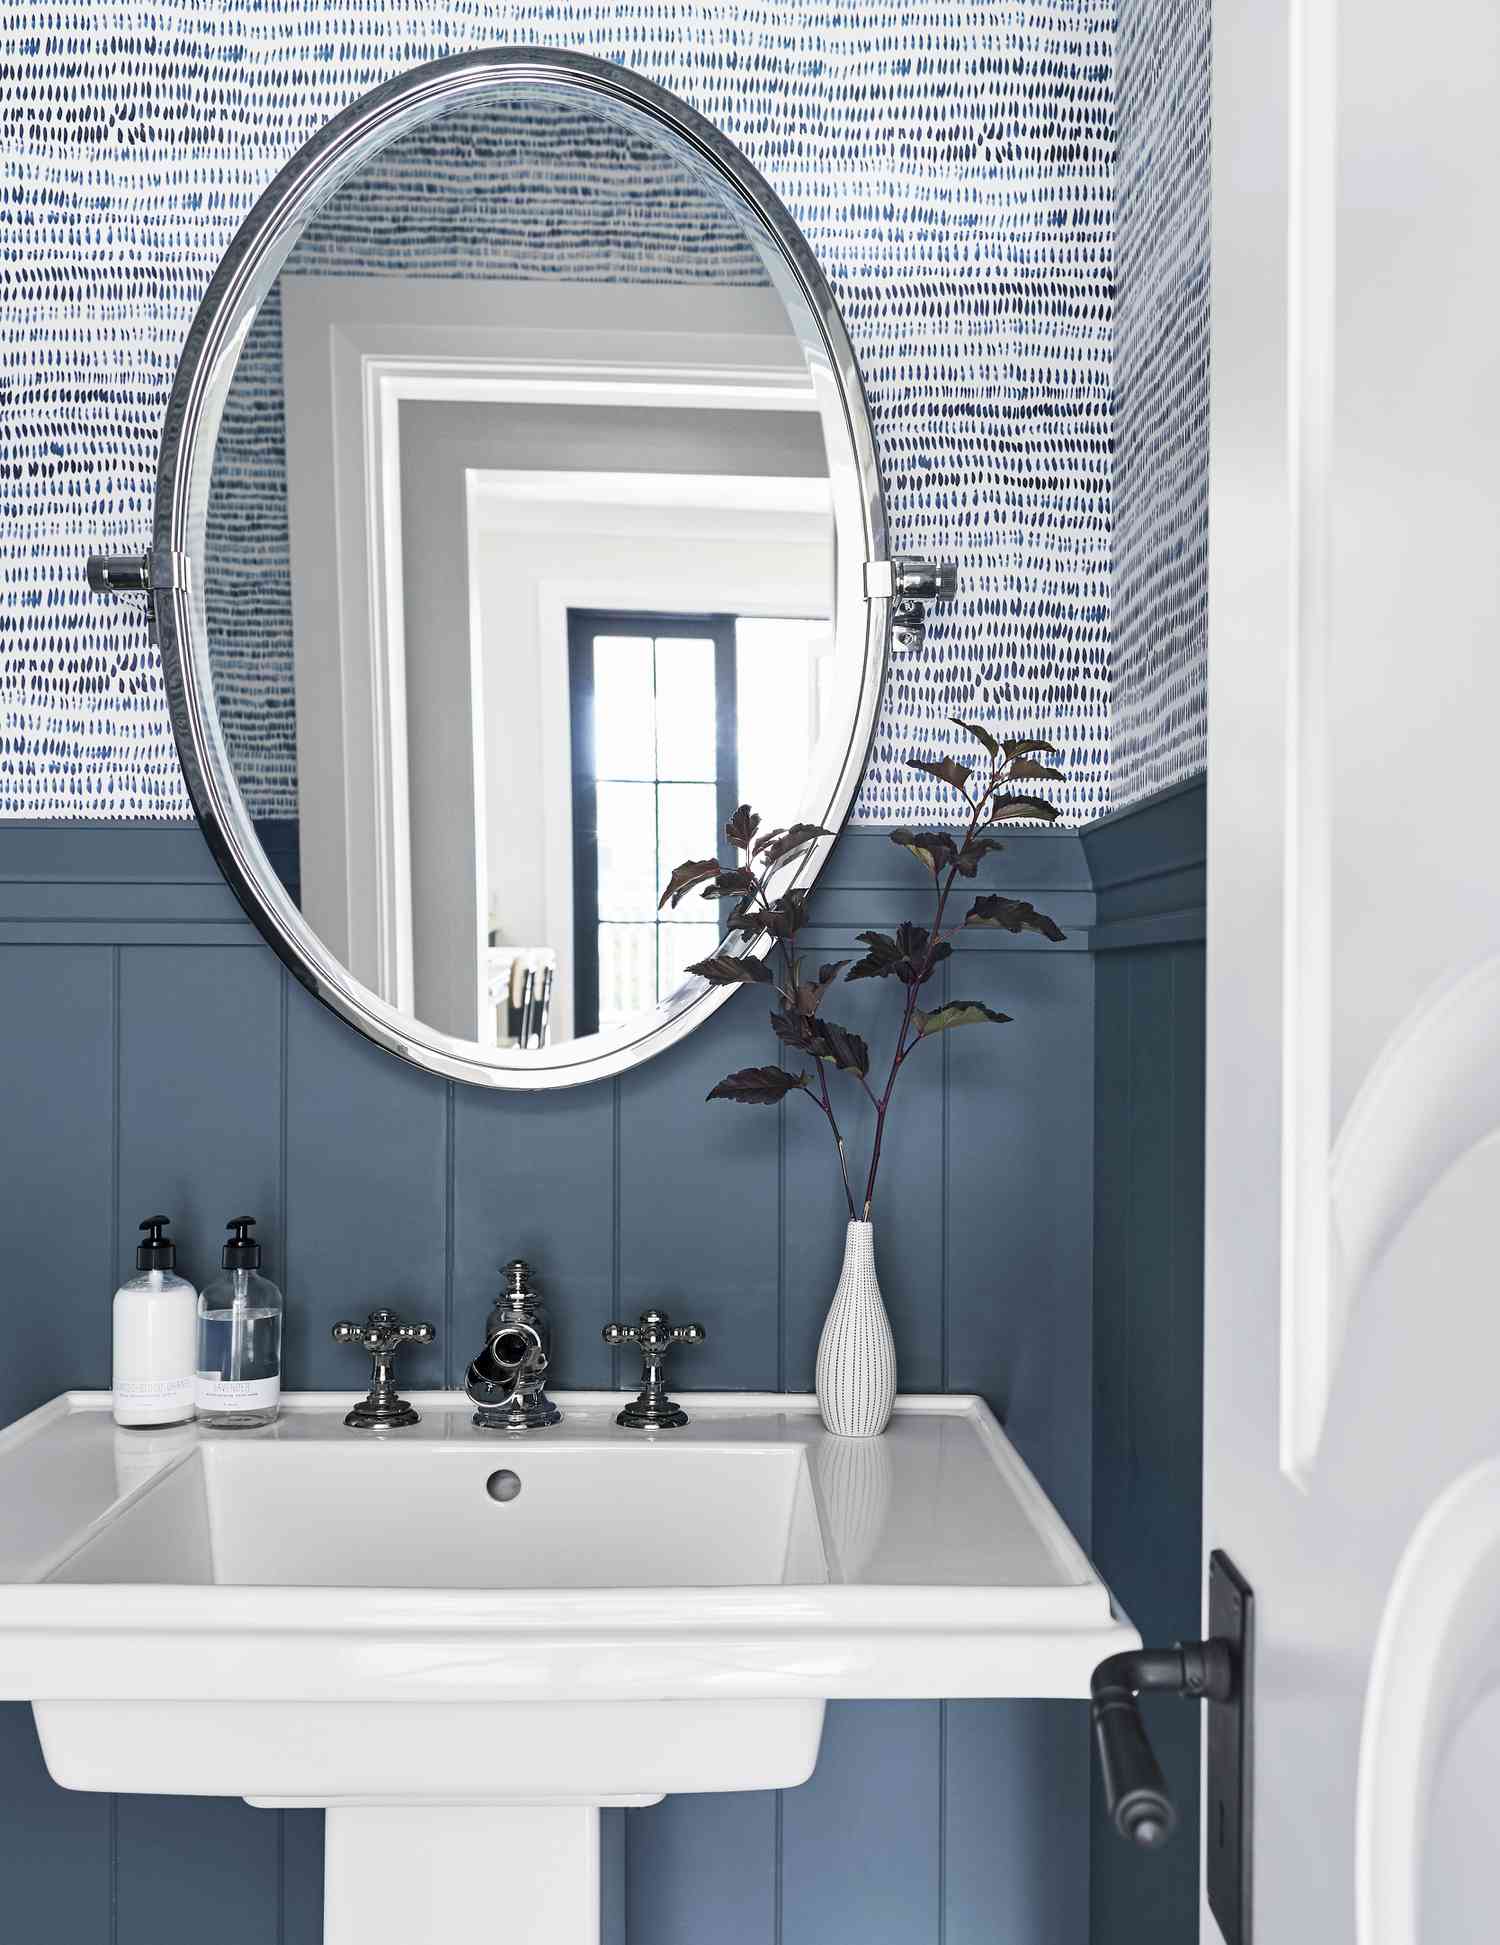 Lavabo de pedestal blanco con un espejo ovalado, papel pintado azul y blanco y revestimiento de madera azul pizarra